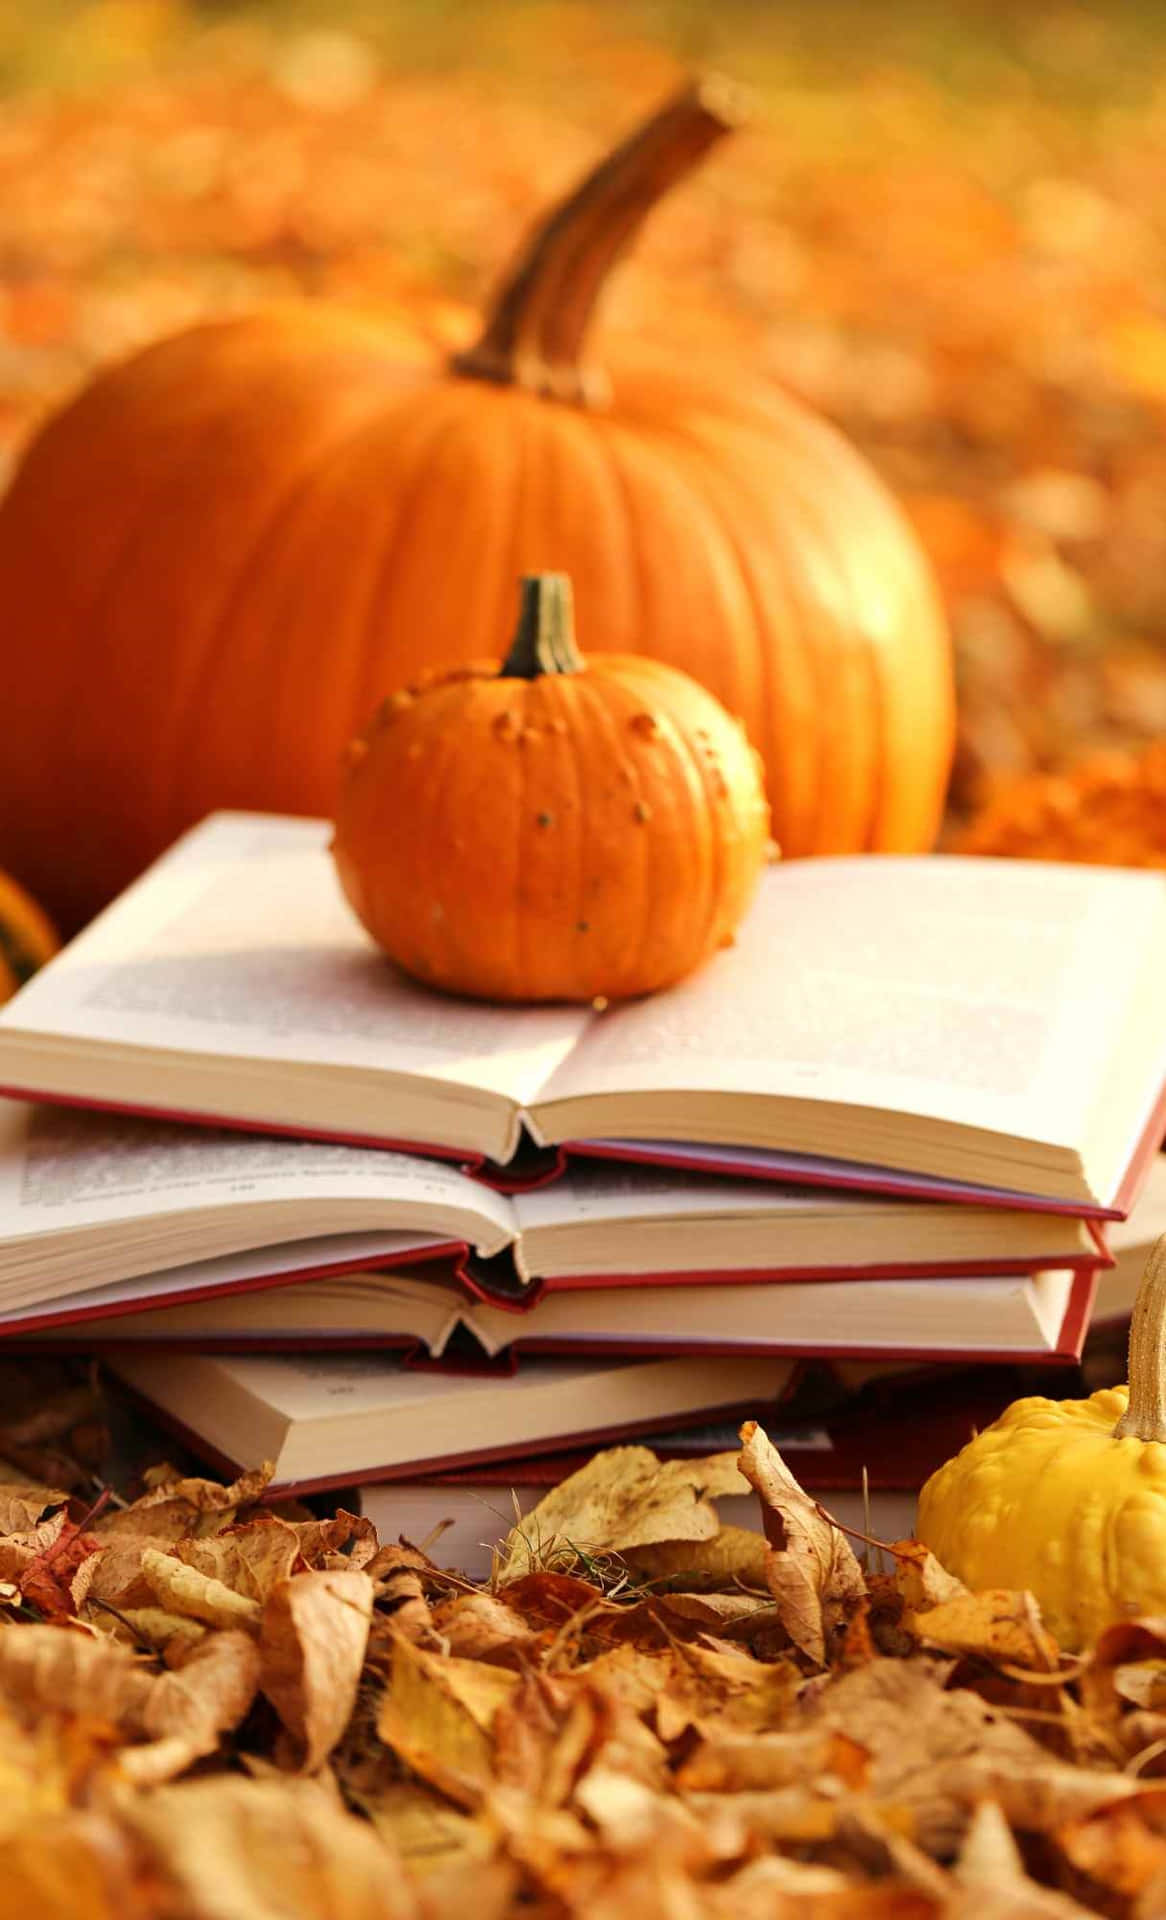 Autumn Reading Pumpkins.jpg Wallpaper